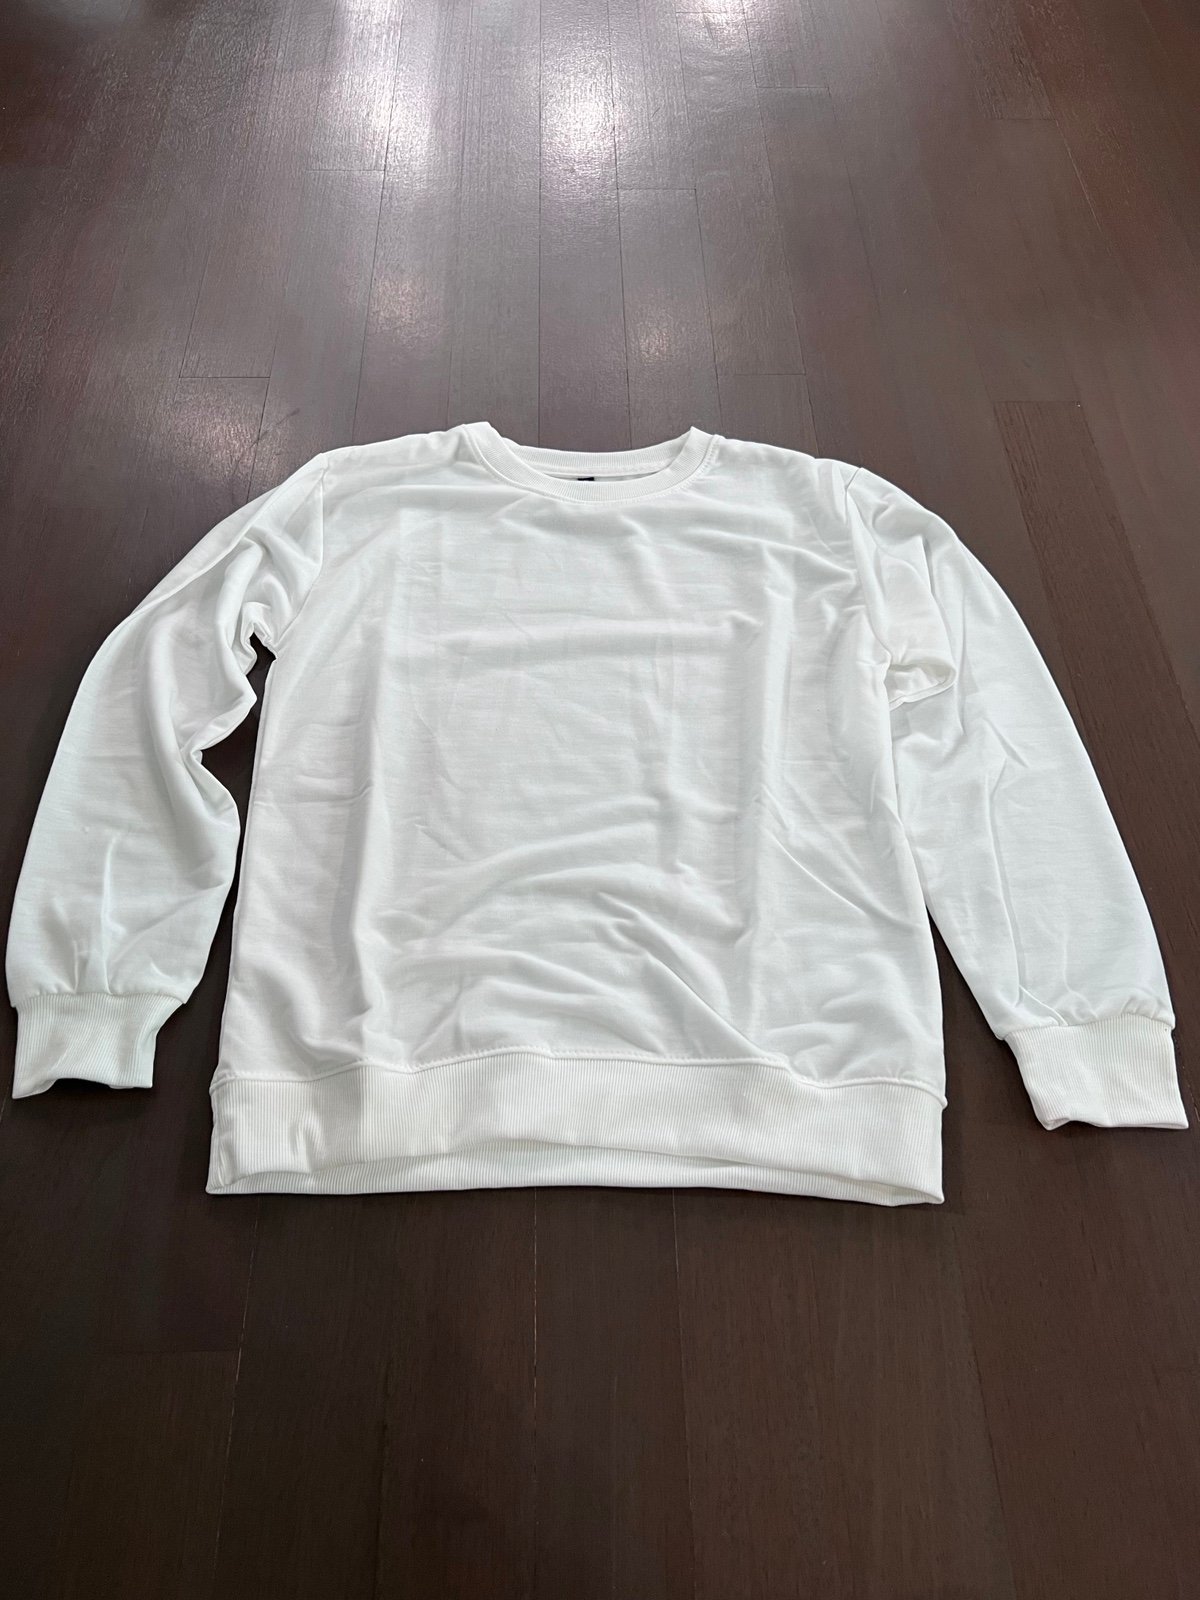 Exclusive Women´s round neck sweatshirt. Size M, b